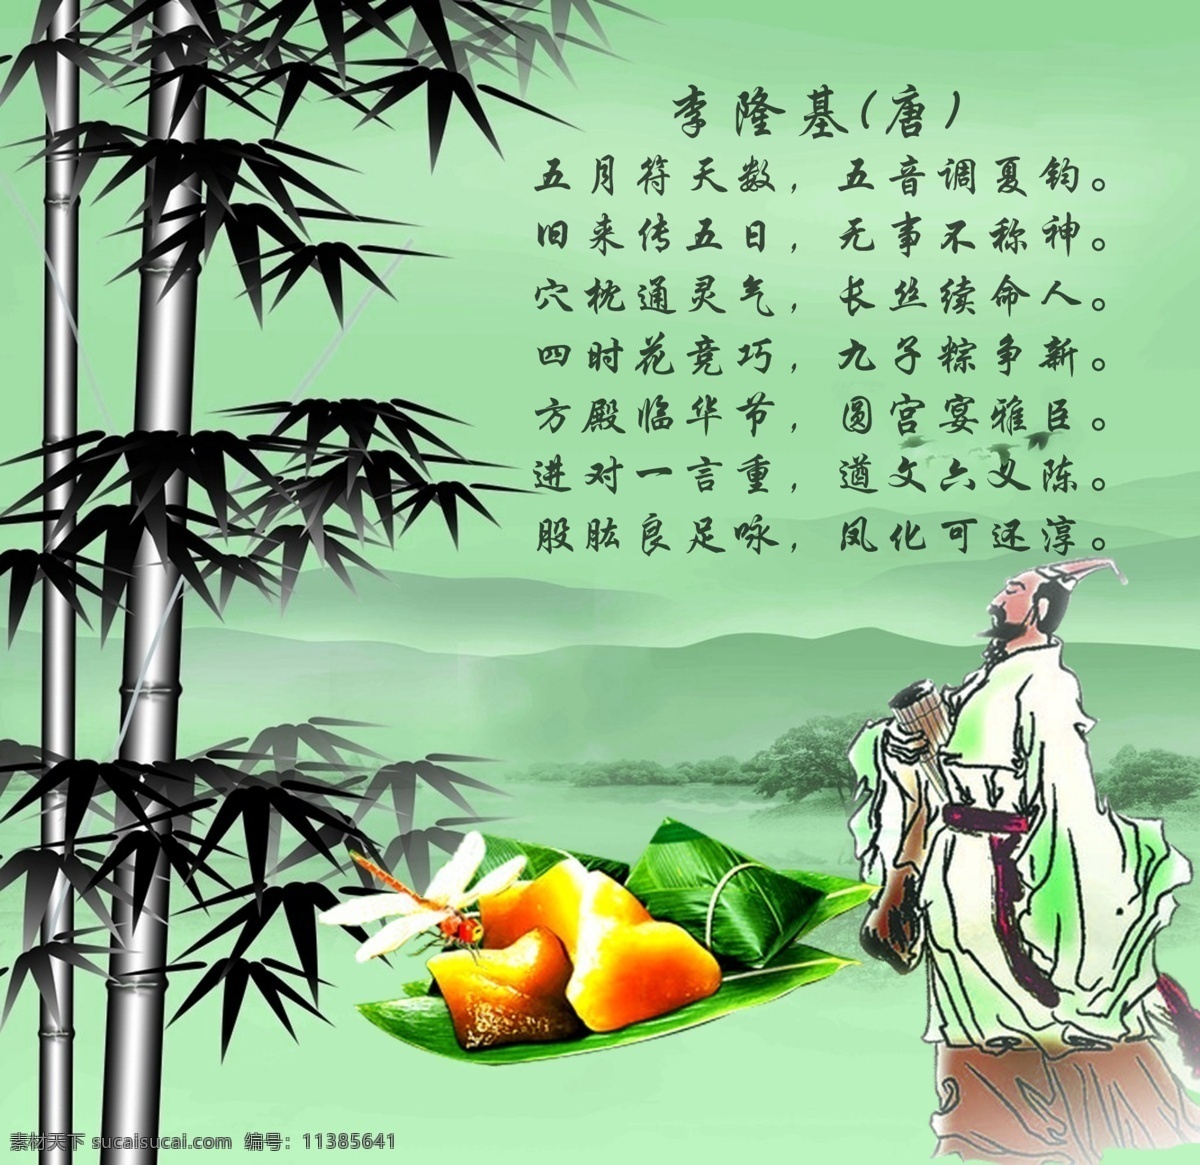 墨竹 绿水 青山 屈原 粽子 诗词 端午 佳节 节日素材 端午节